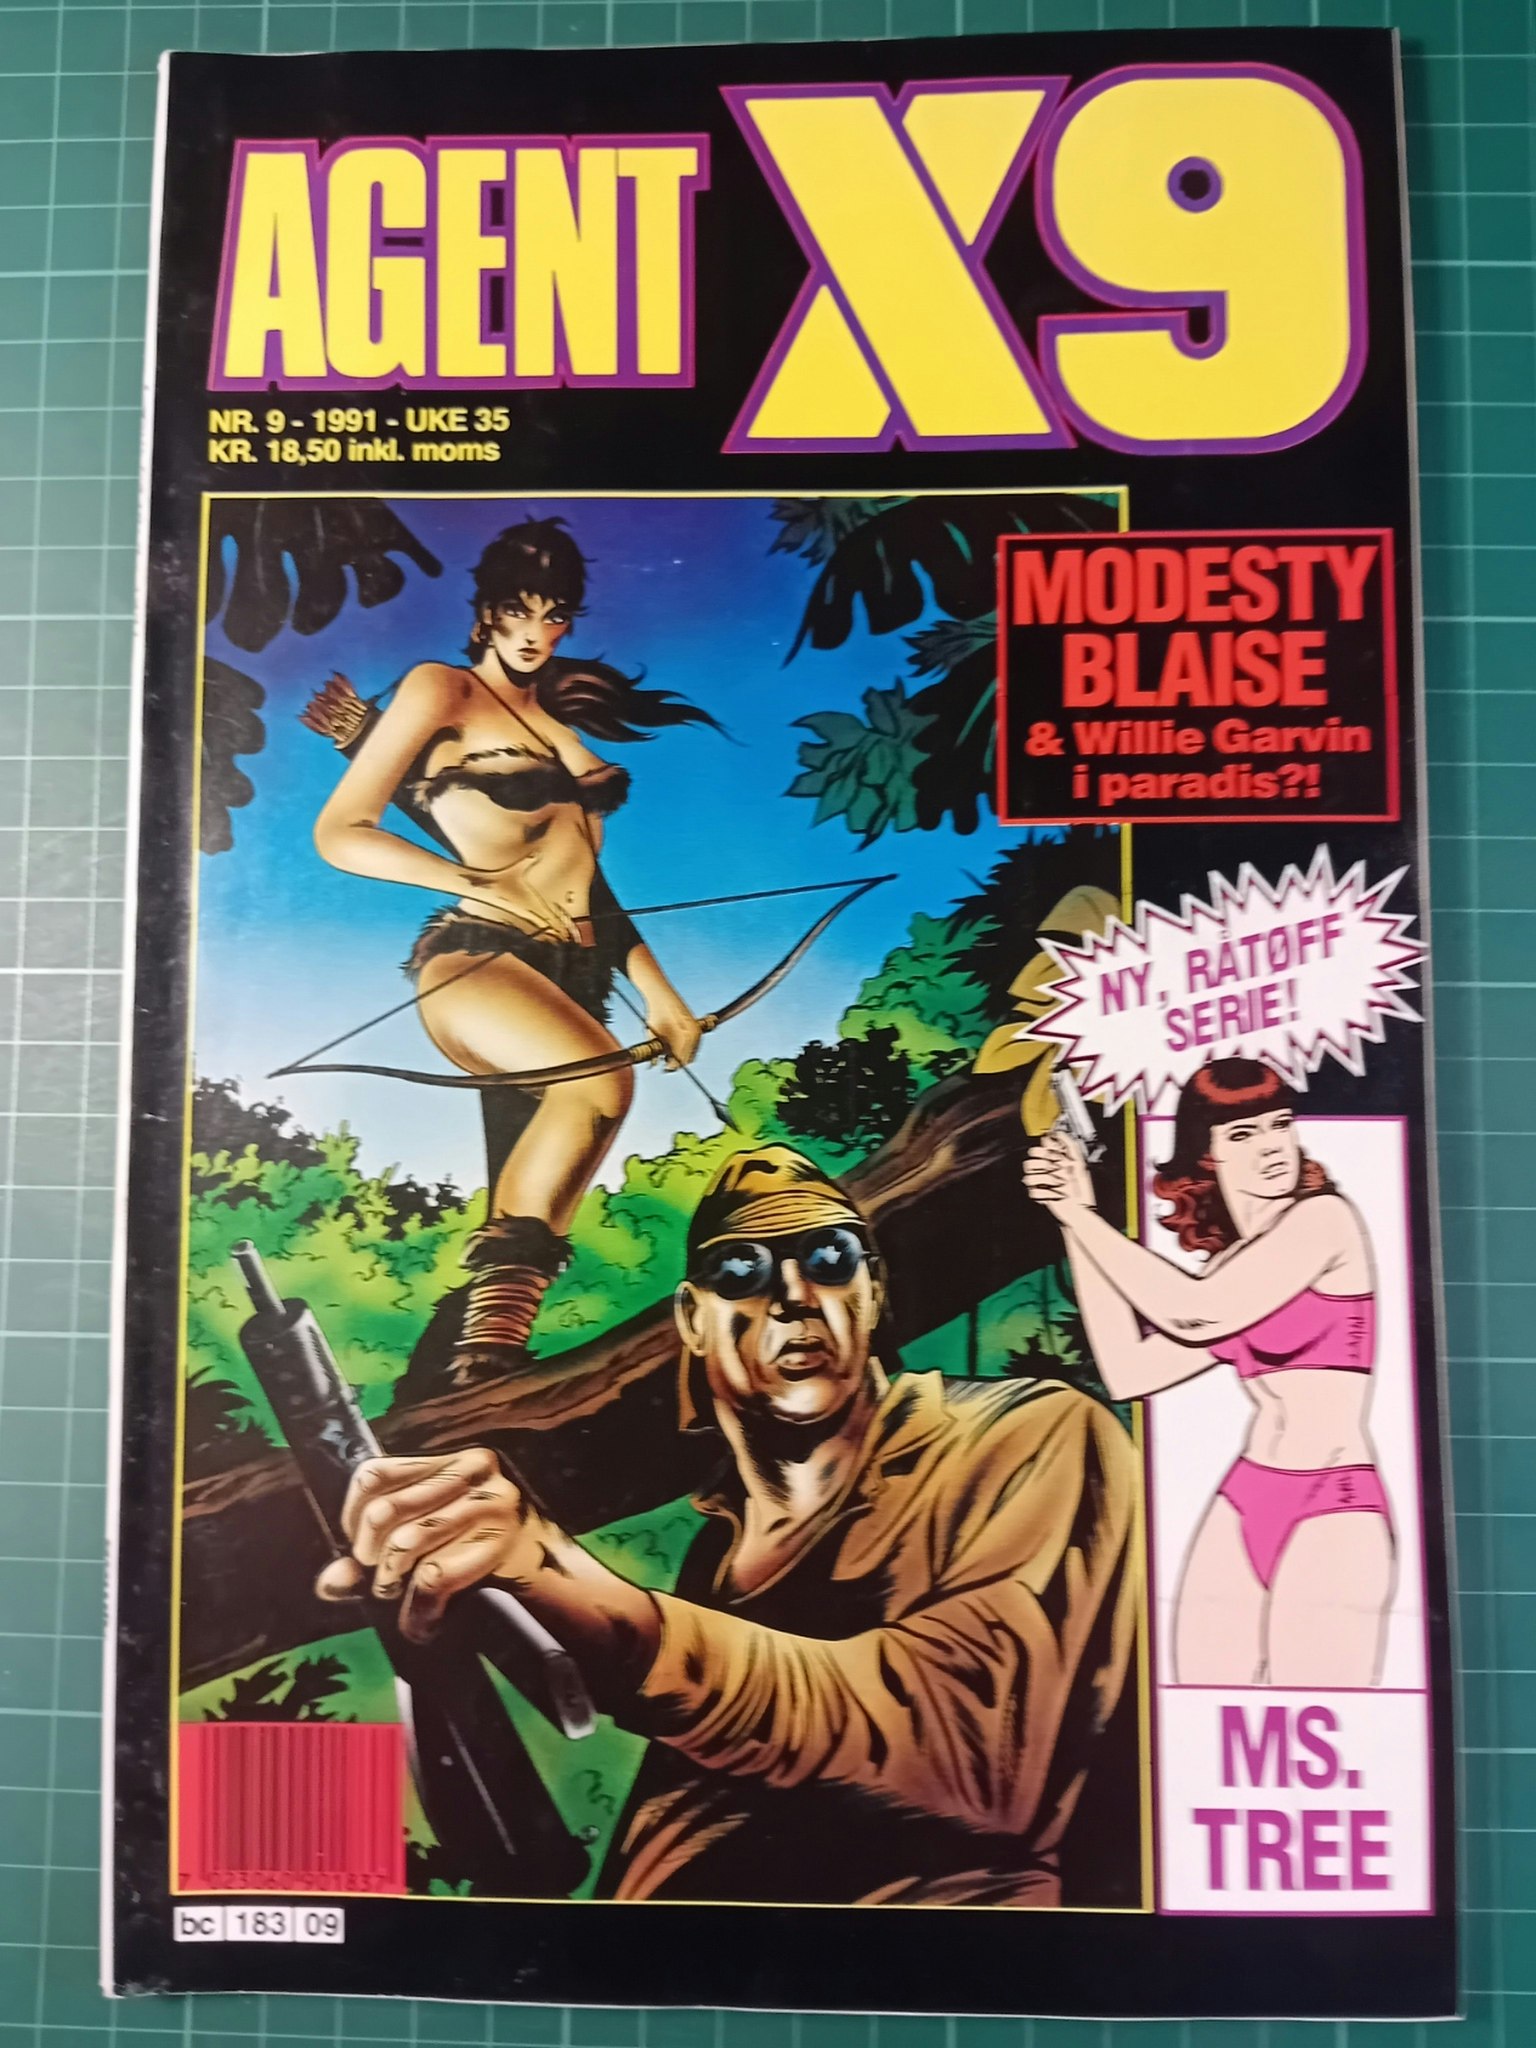 Agent X9 1991 - 09